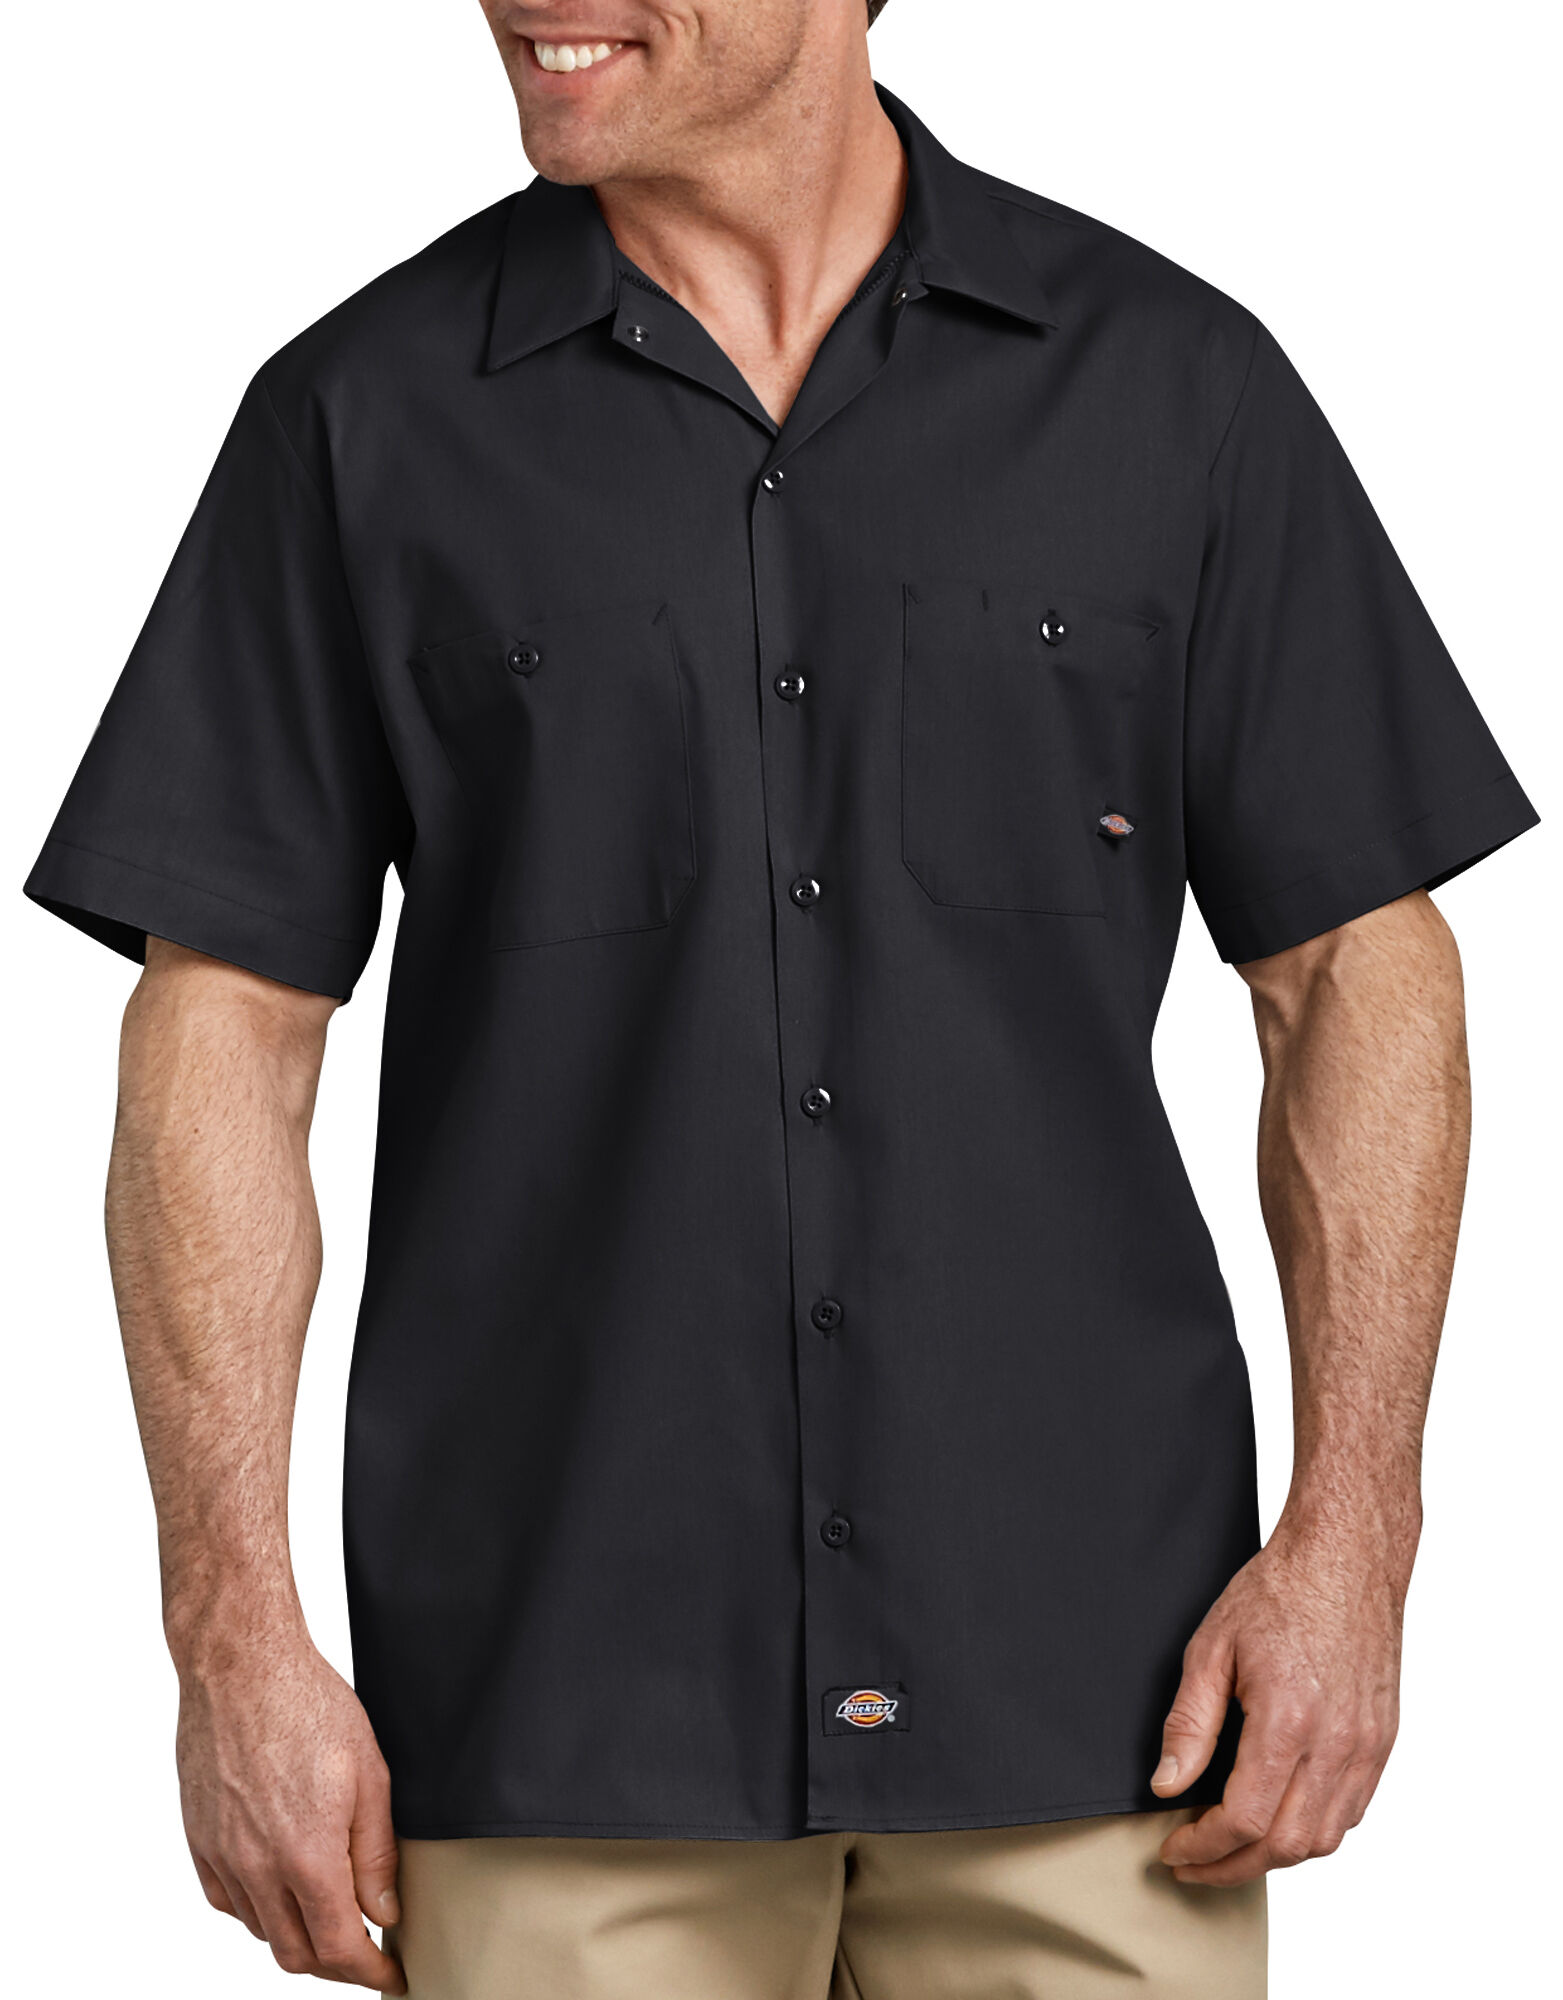 black button up shirt short sleeve